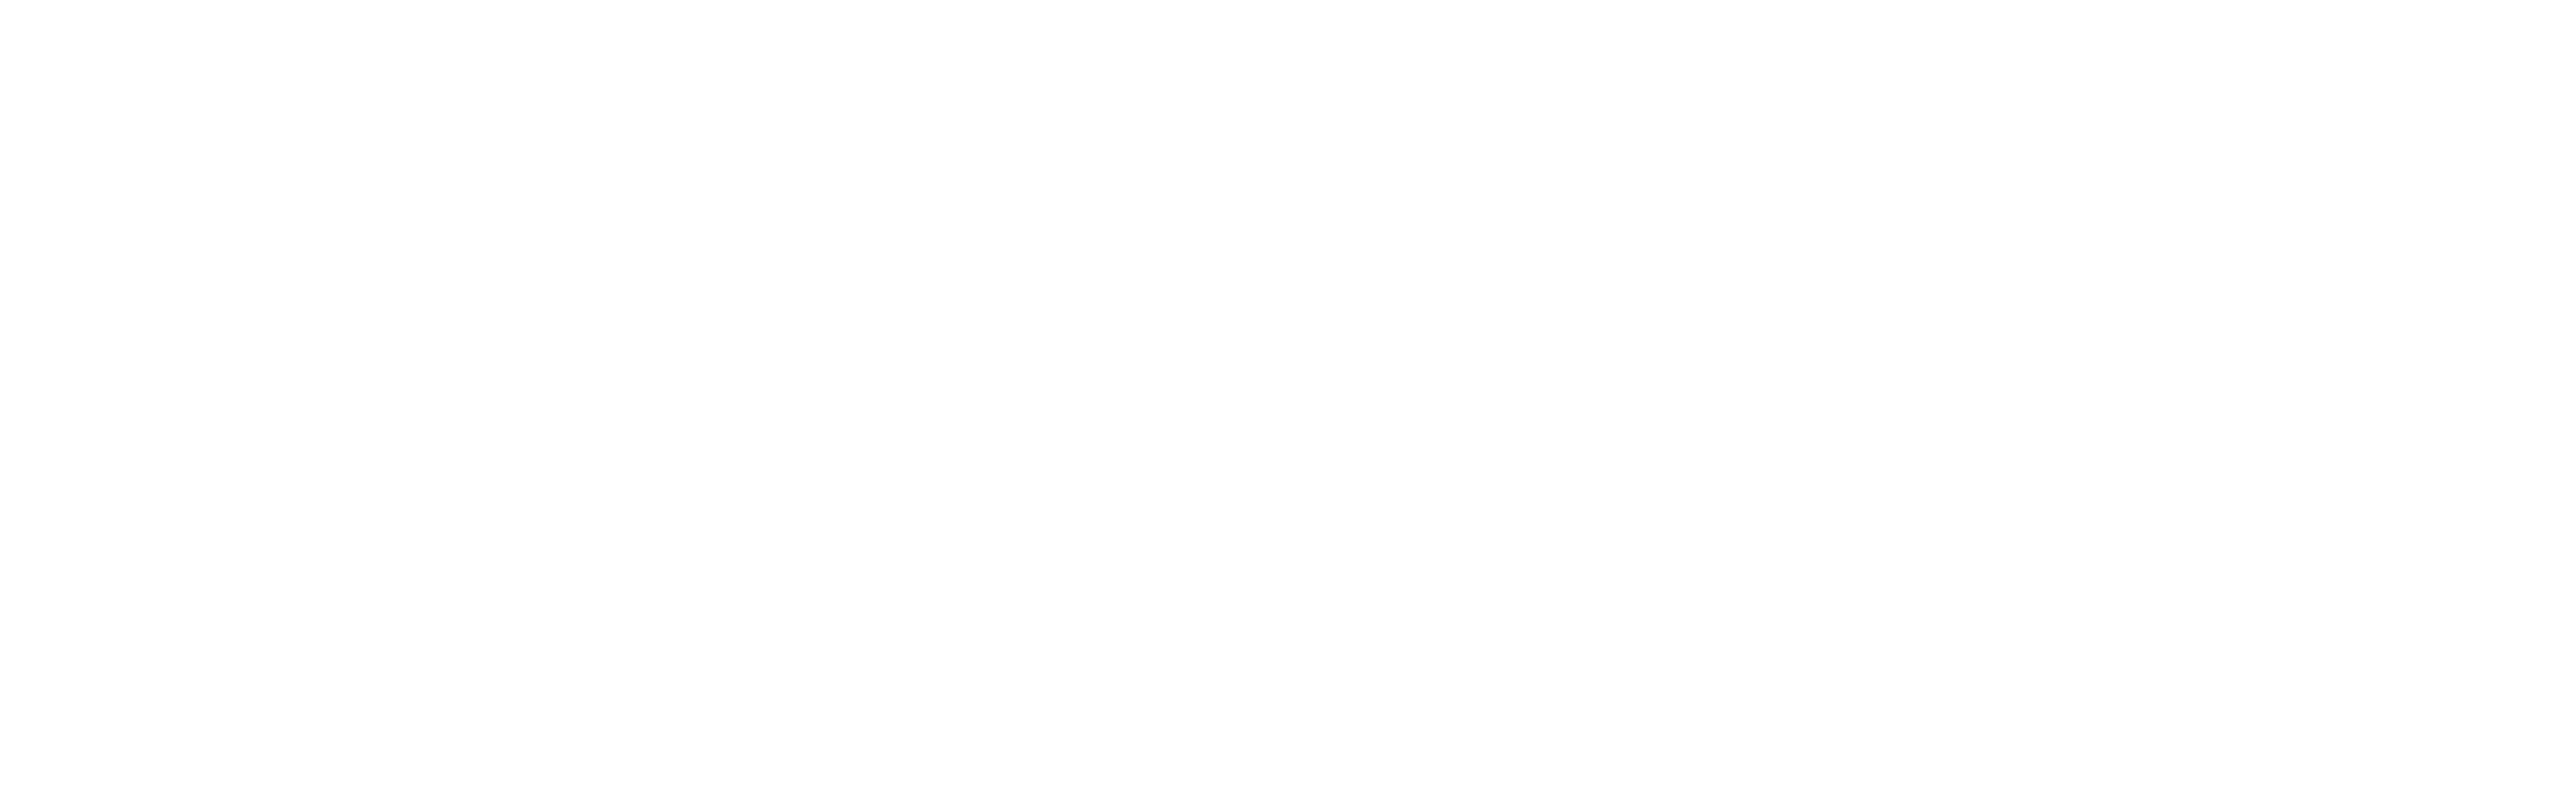 Together Together logo